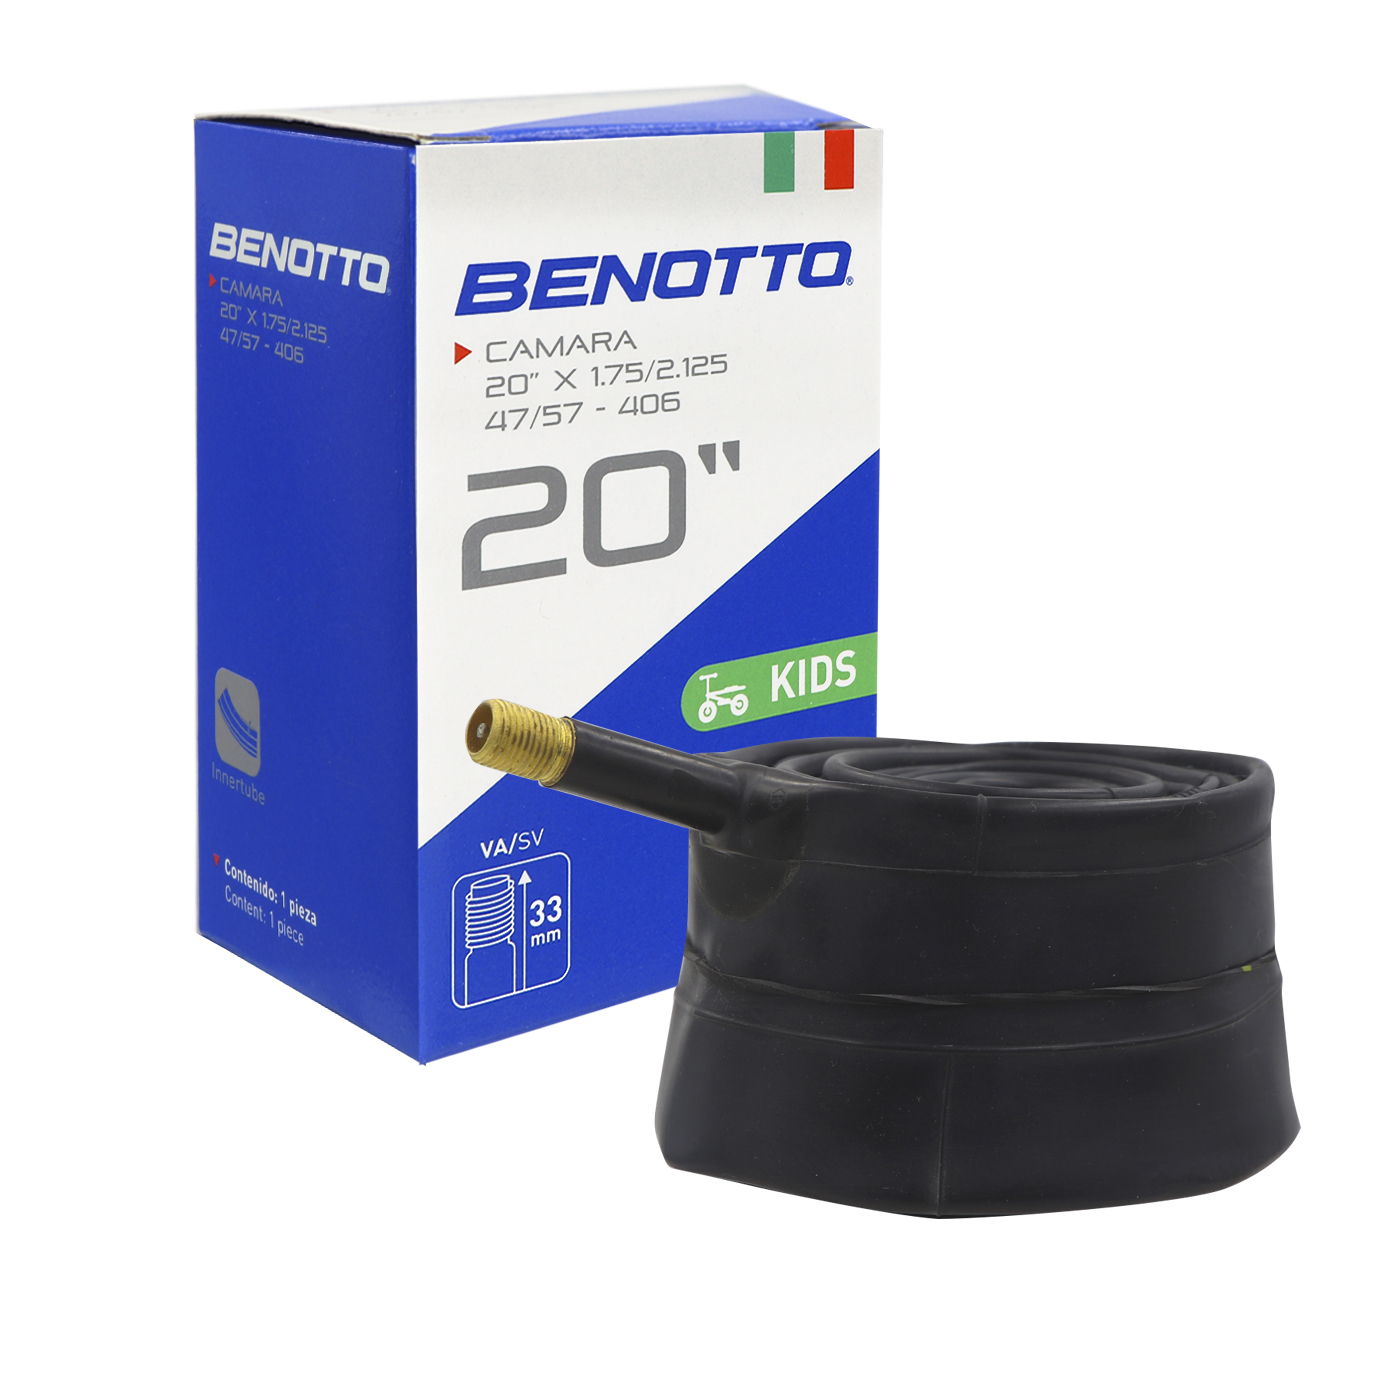 Camara BENOTTO 20X1.75/2.125 V.A. 33mm